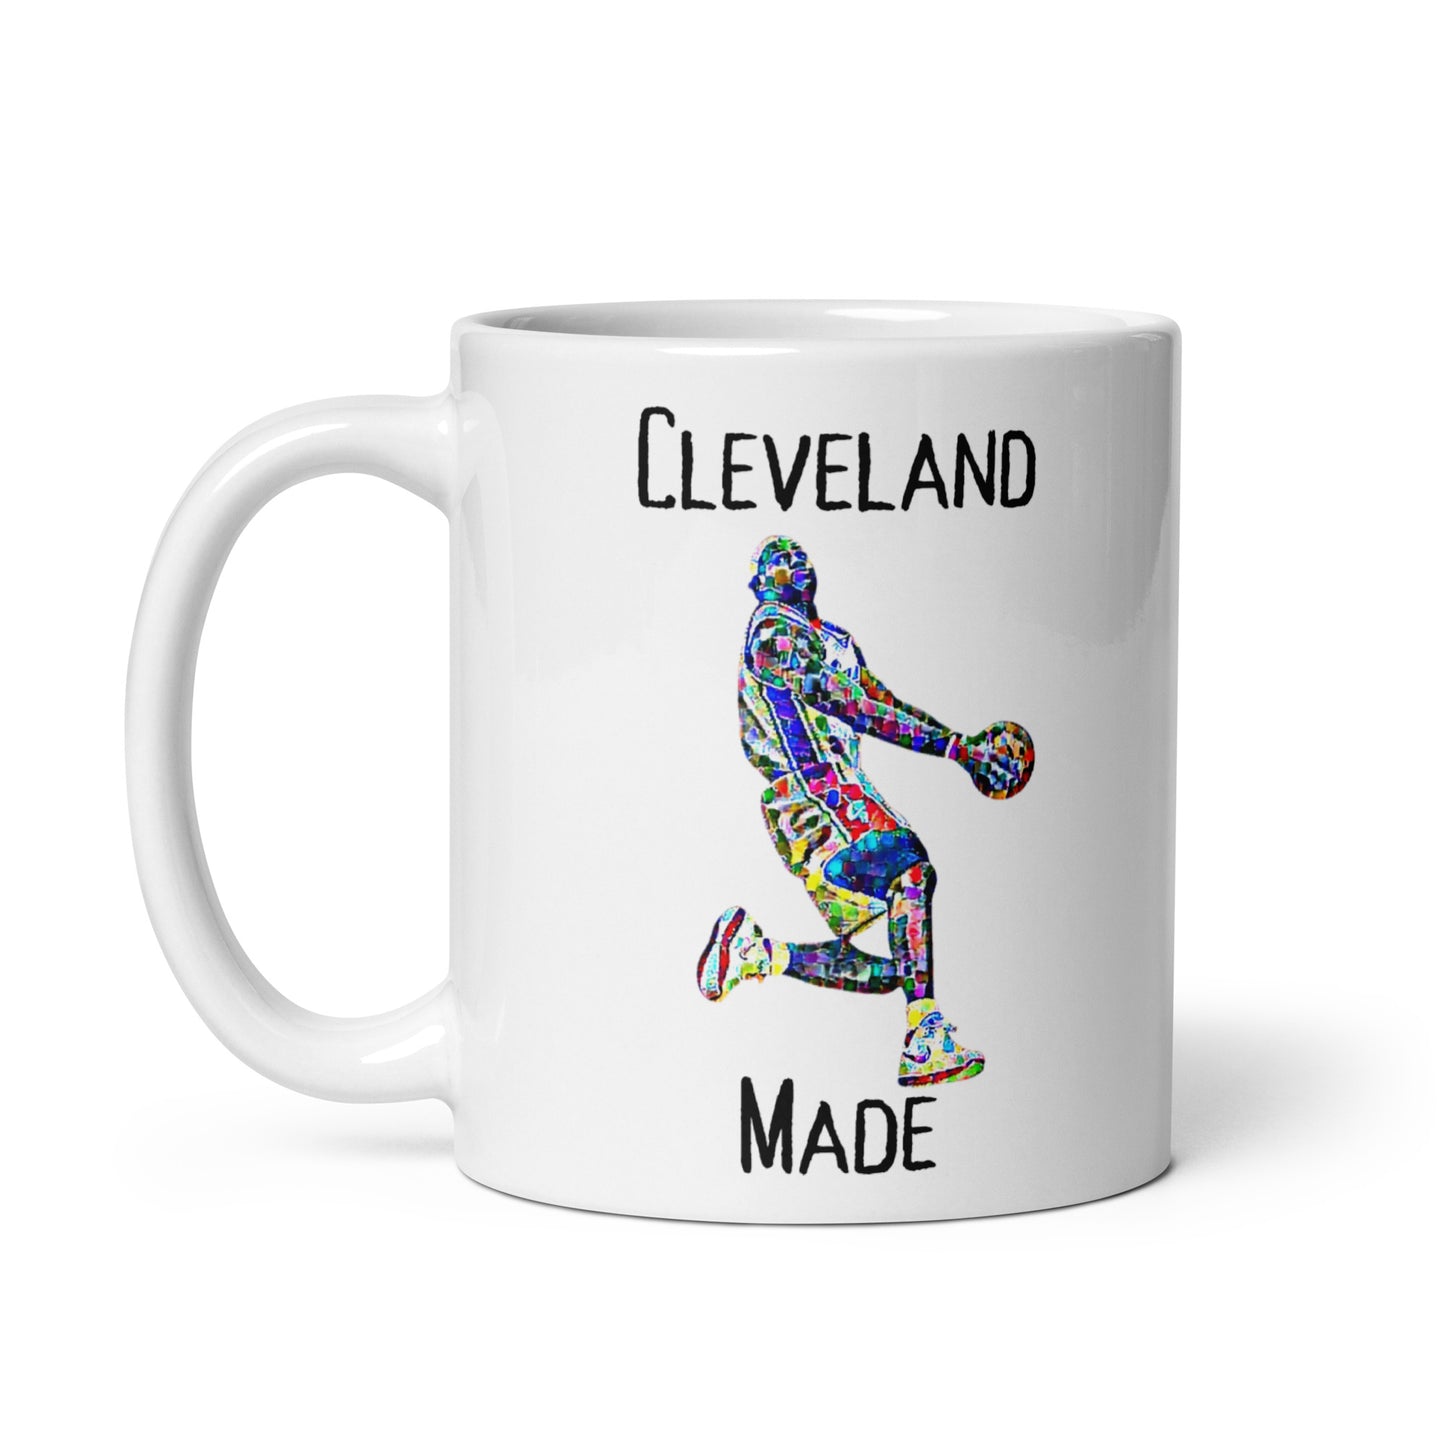 Lebron James Cleveland Made Mug